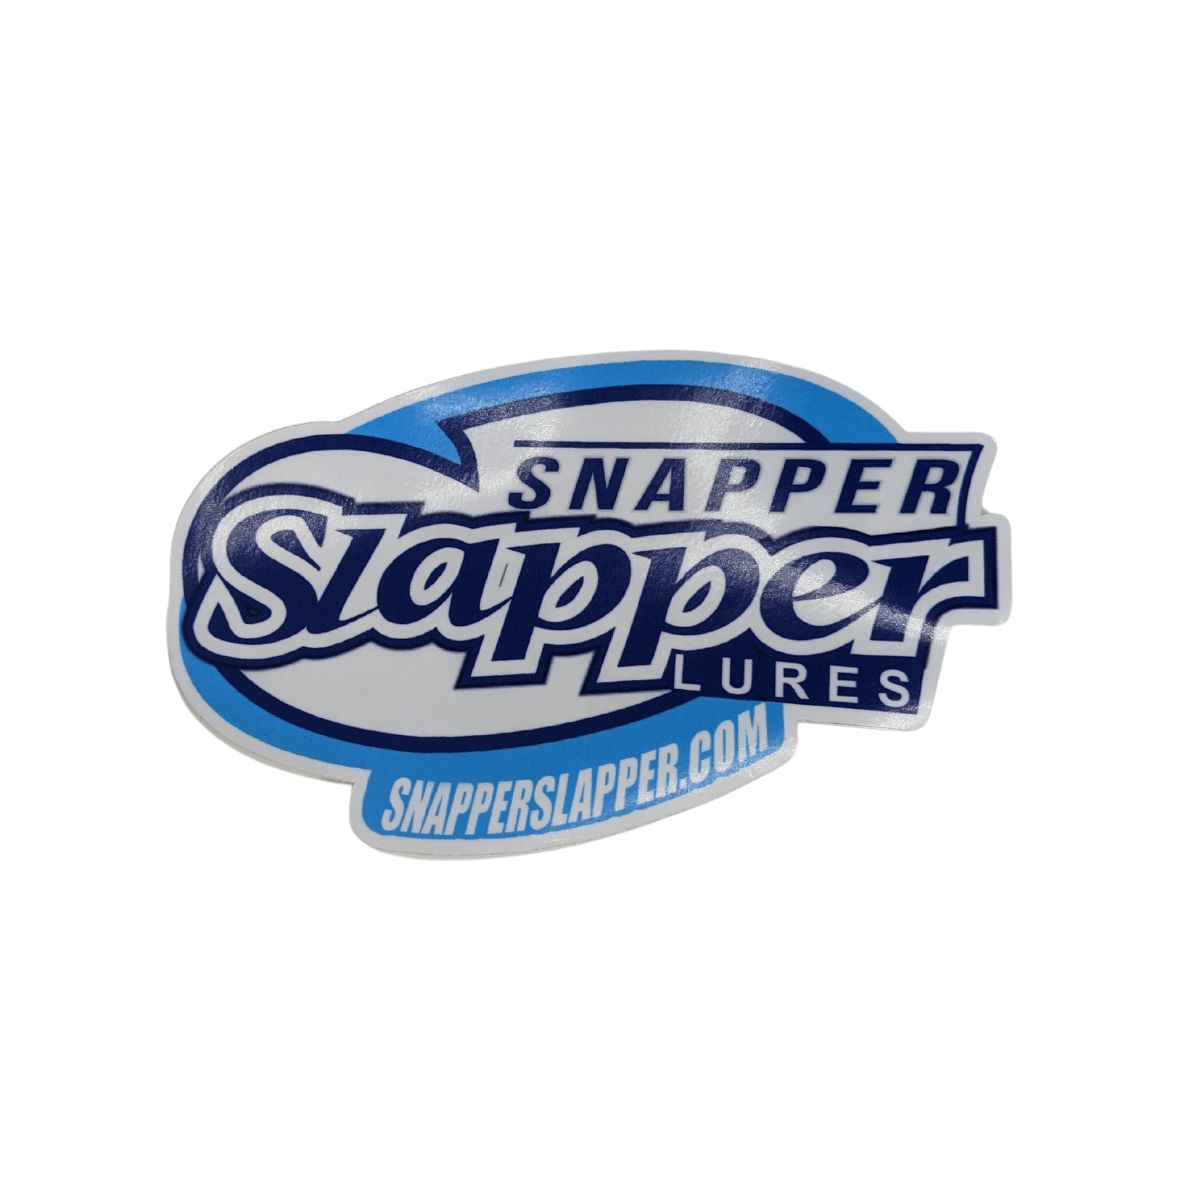 Snapper Slapper Swag Sticker – Snapper Slapper Lures